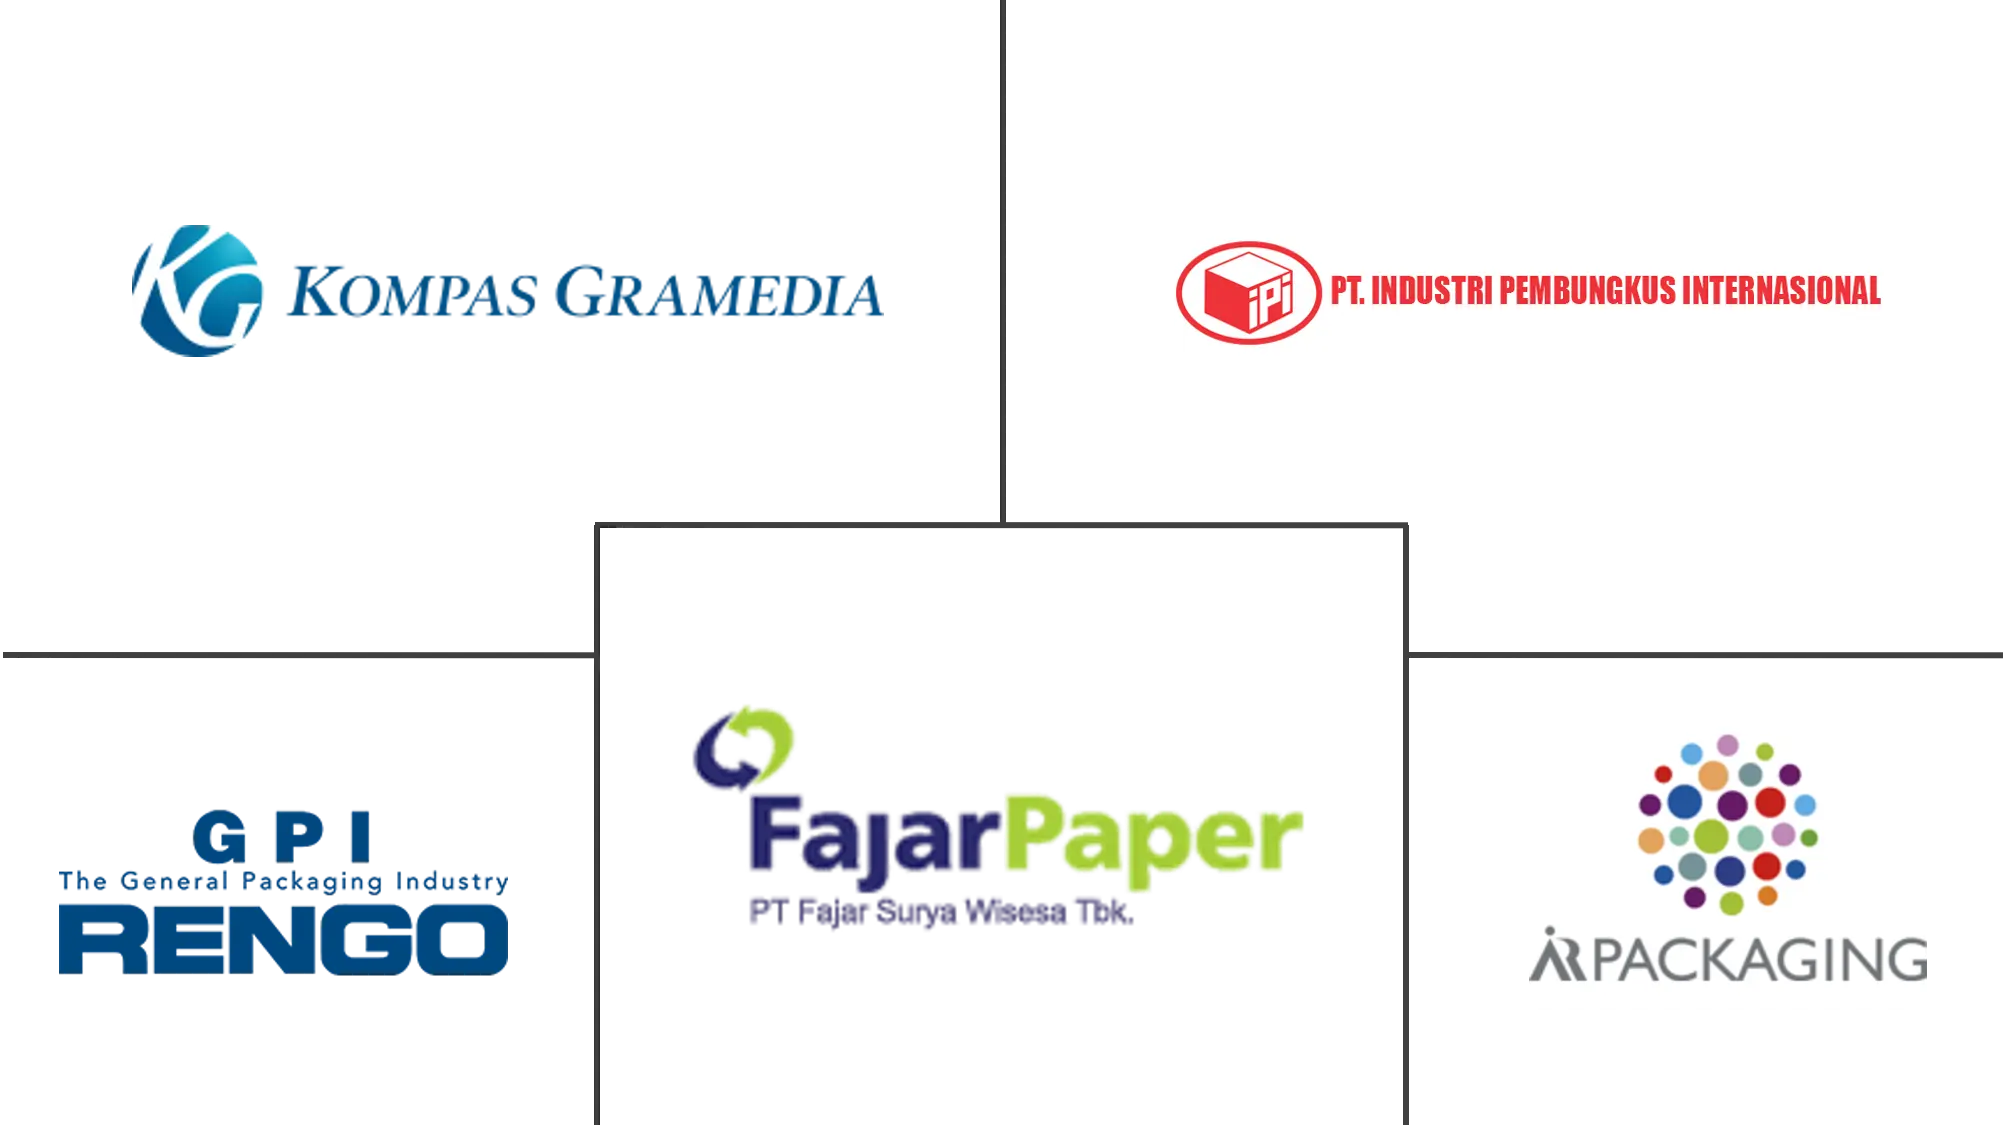 Principales actores del mercado de envases de papel de Indonesia